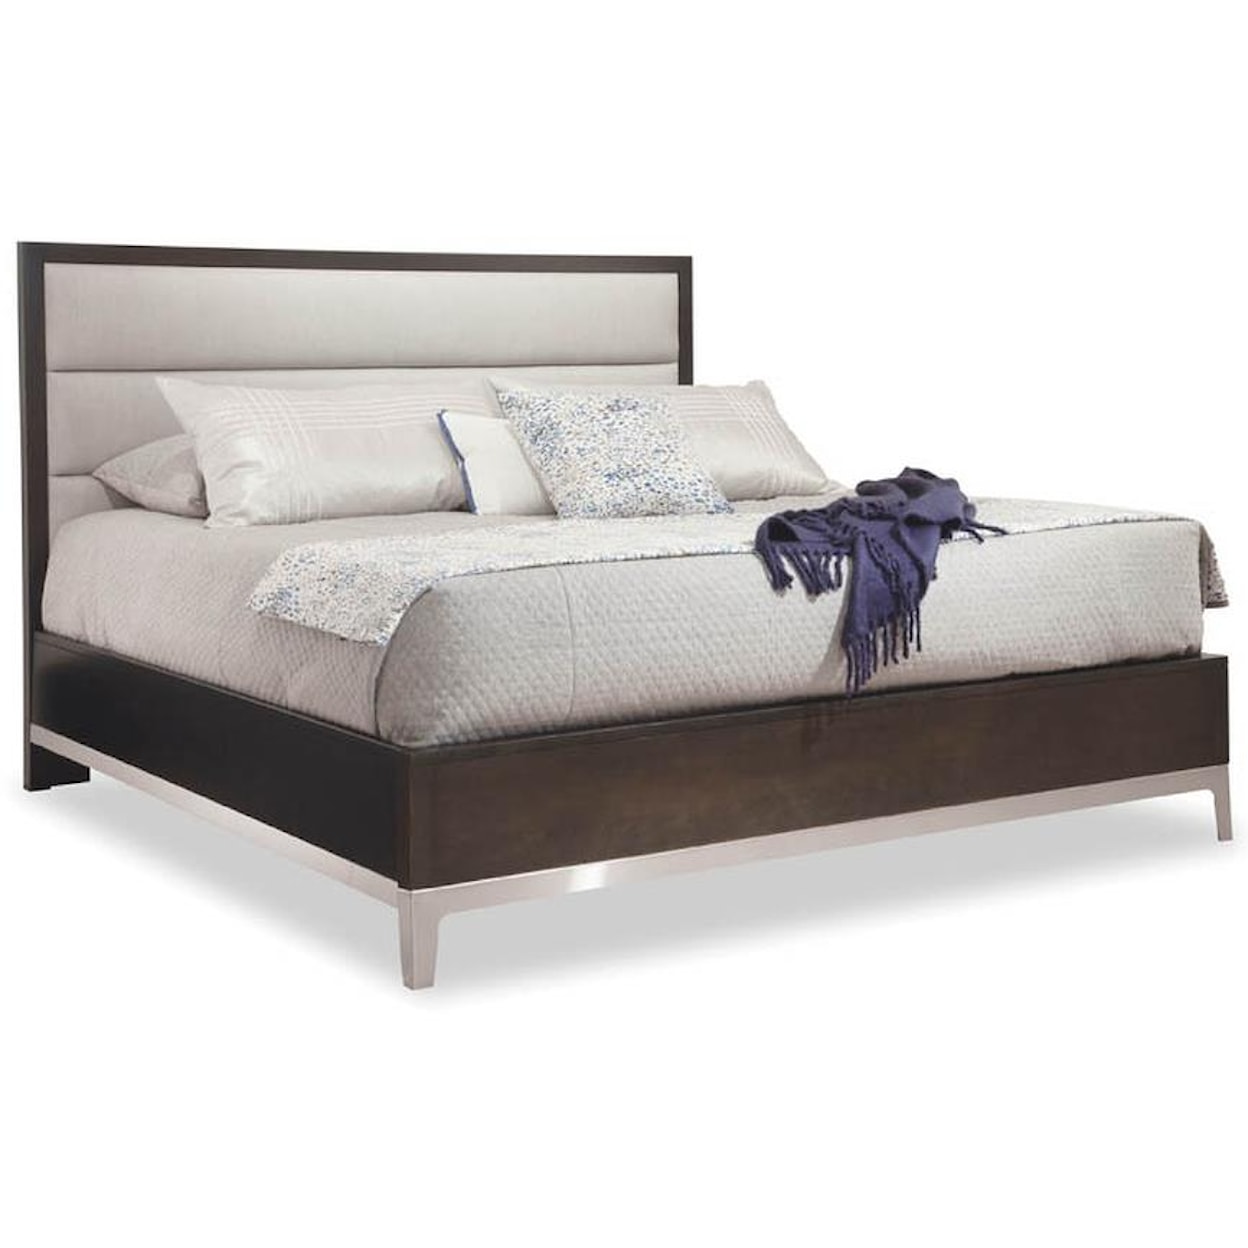 Durham Defined Distinction King Upholstered Bed